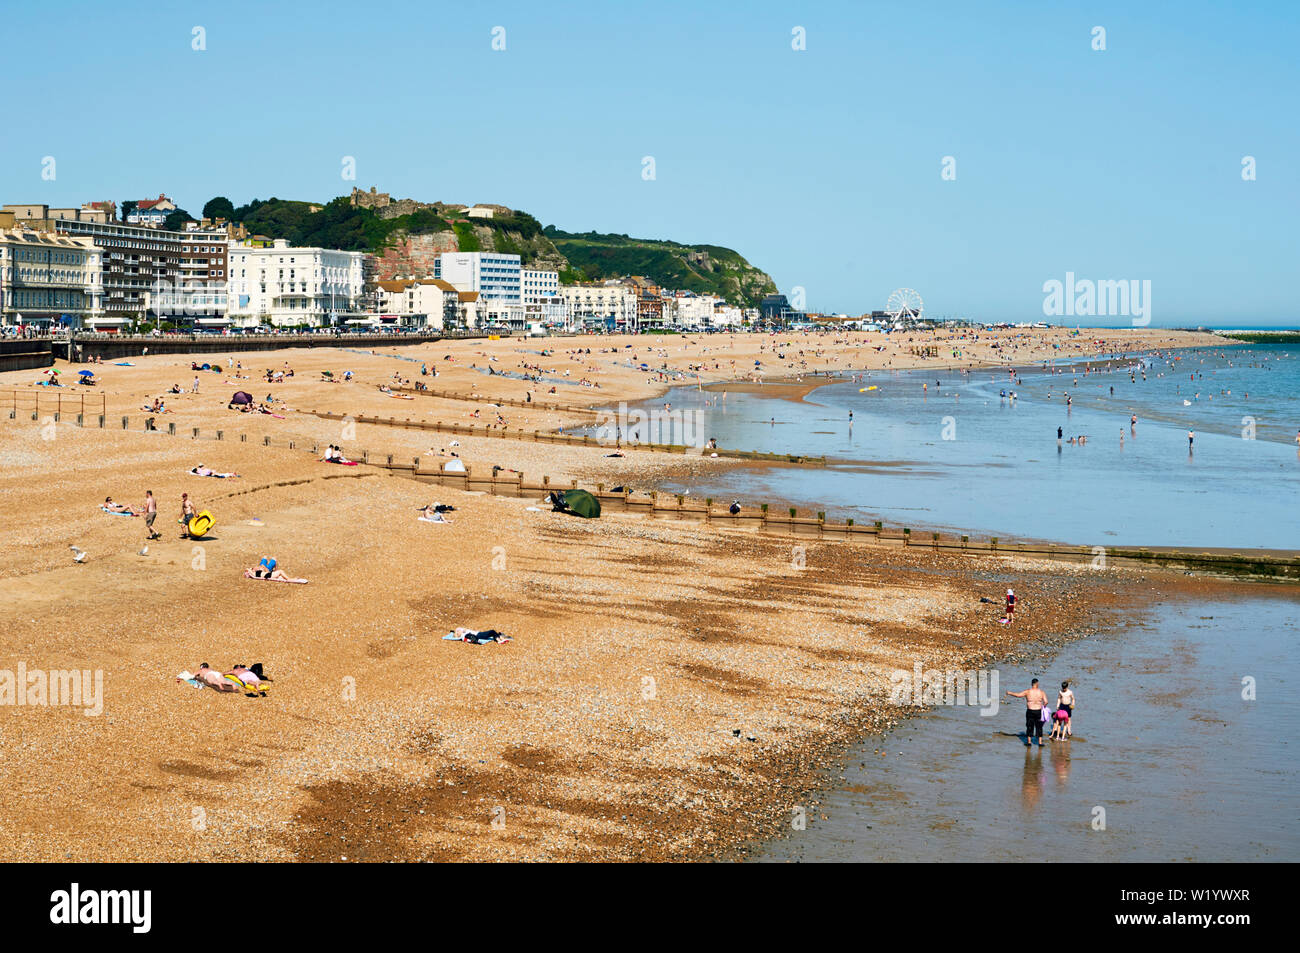 Plage de Hastings, East Sussex, UK, en juin, avec la foule sur la plage et dans la mer Banque D'Images